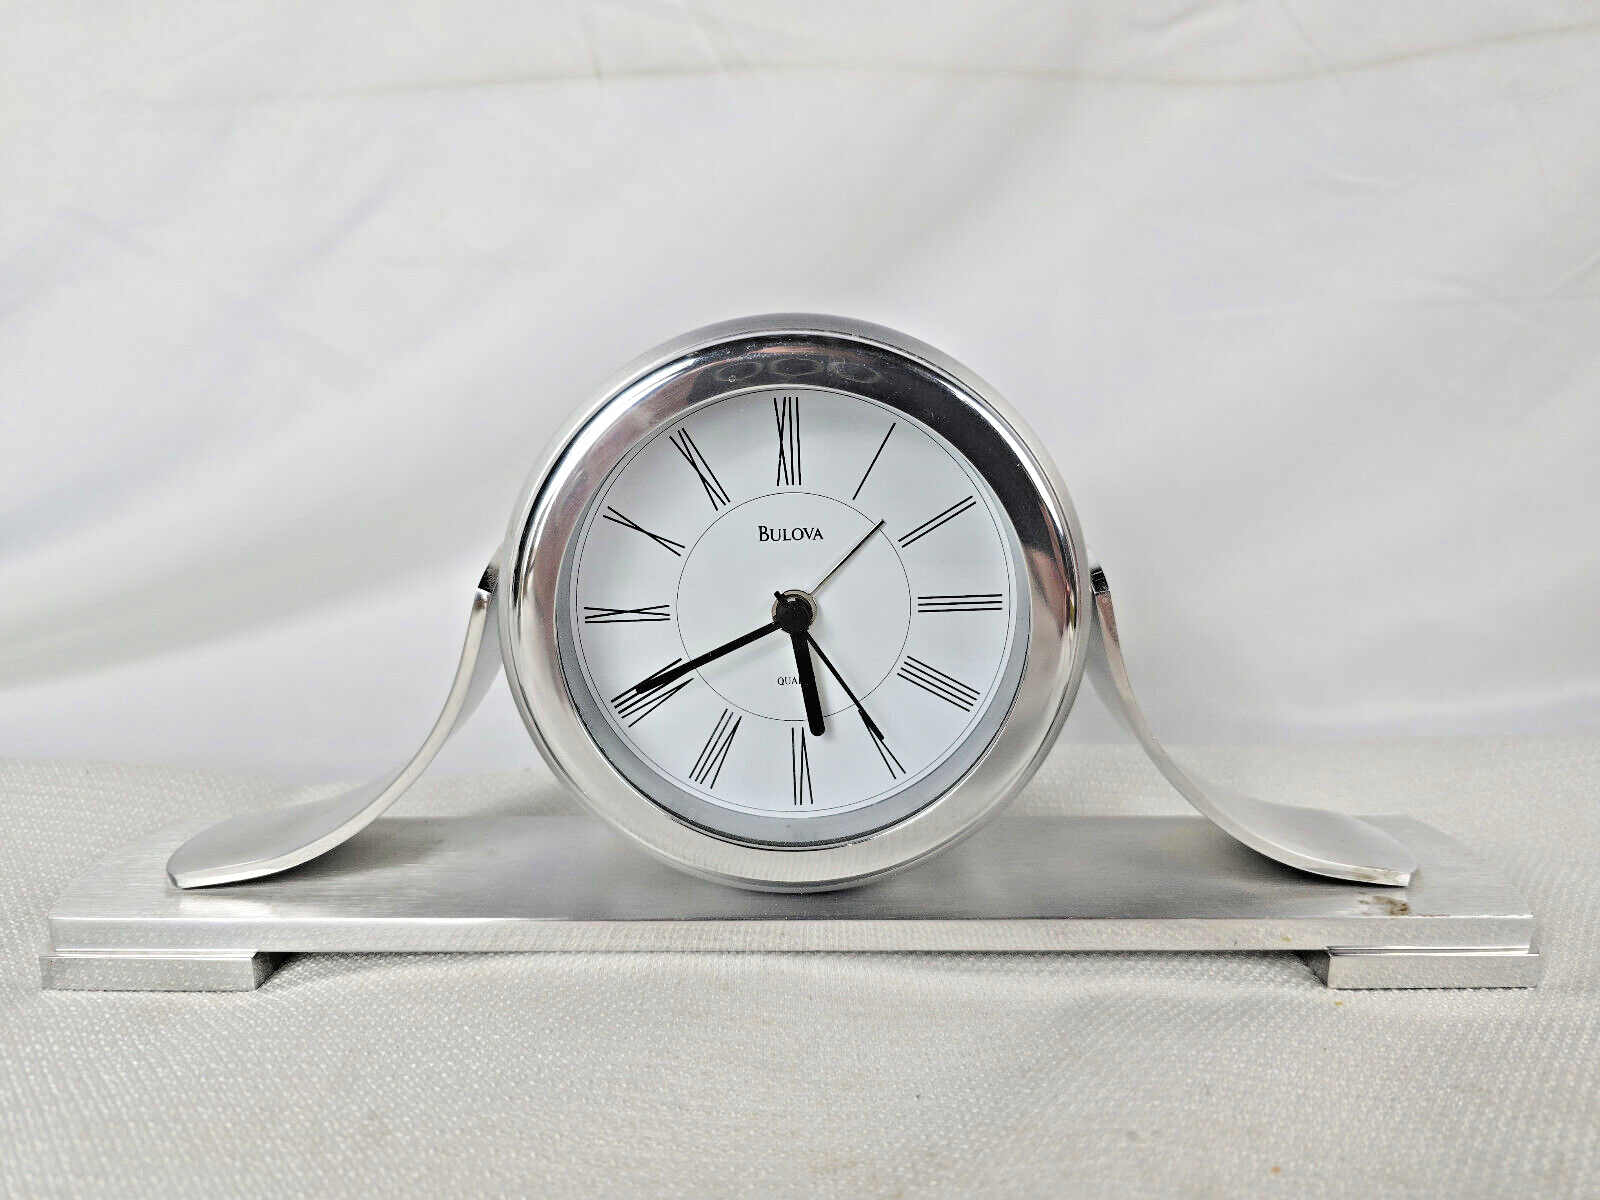 Bulova Sedona B2450 Time Quartz  Alarm Clock Silver Color for Desk or Bedroom - $55.00